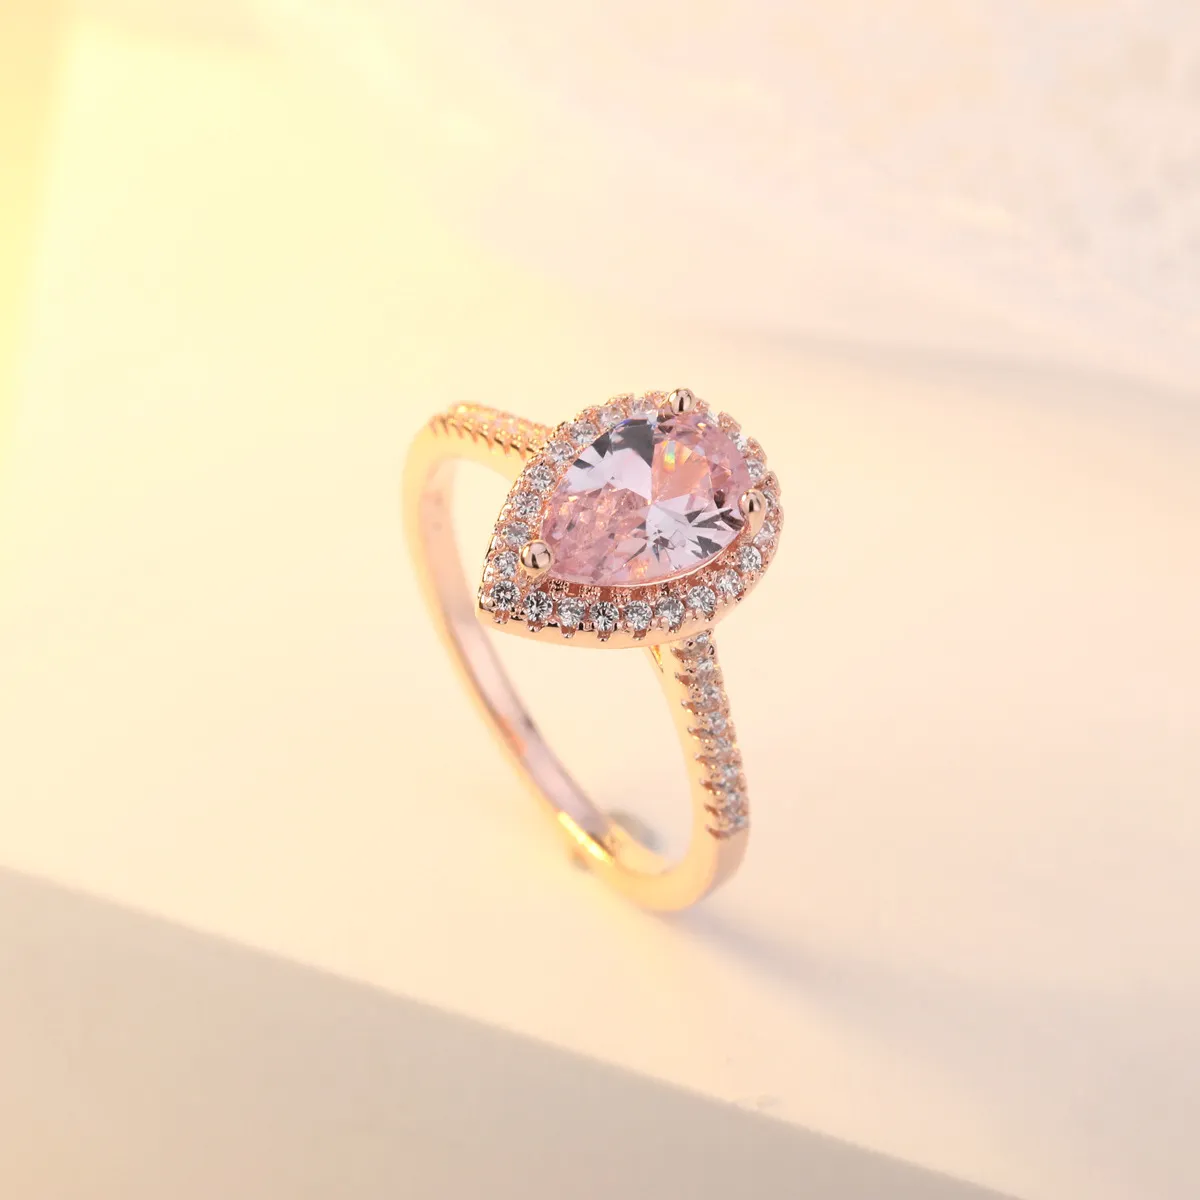 OMHXZJ Цельноевропейское модное кольцо для женщин и девочек, свадебный подарок, капля воды, розовый, белый циркон, кольцо из розового золота 18 карат, RR5981847484